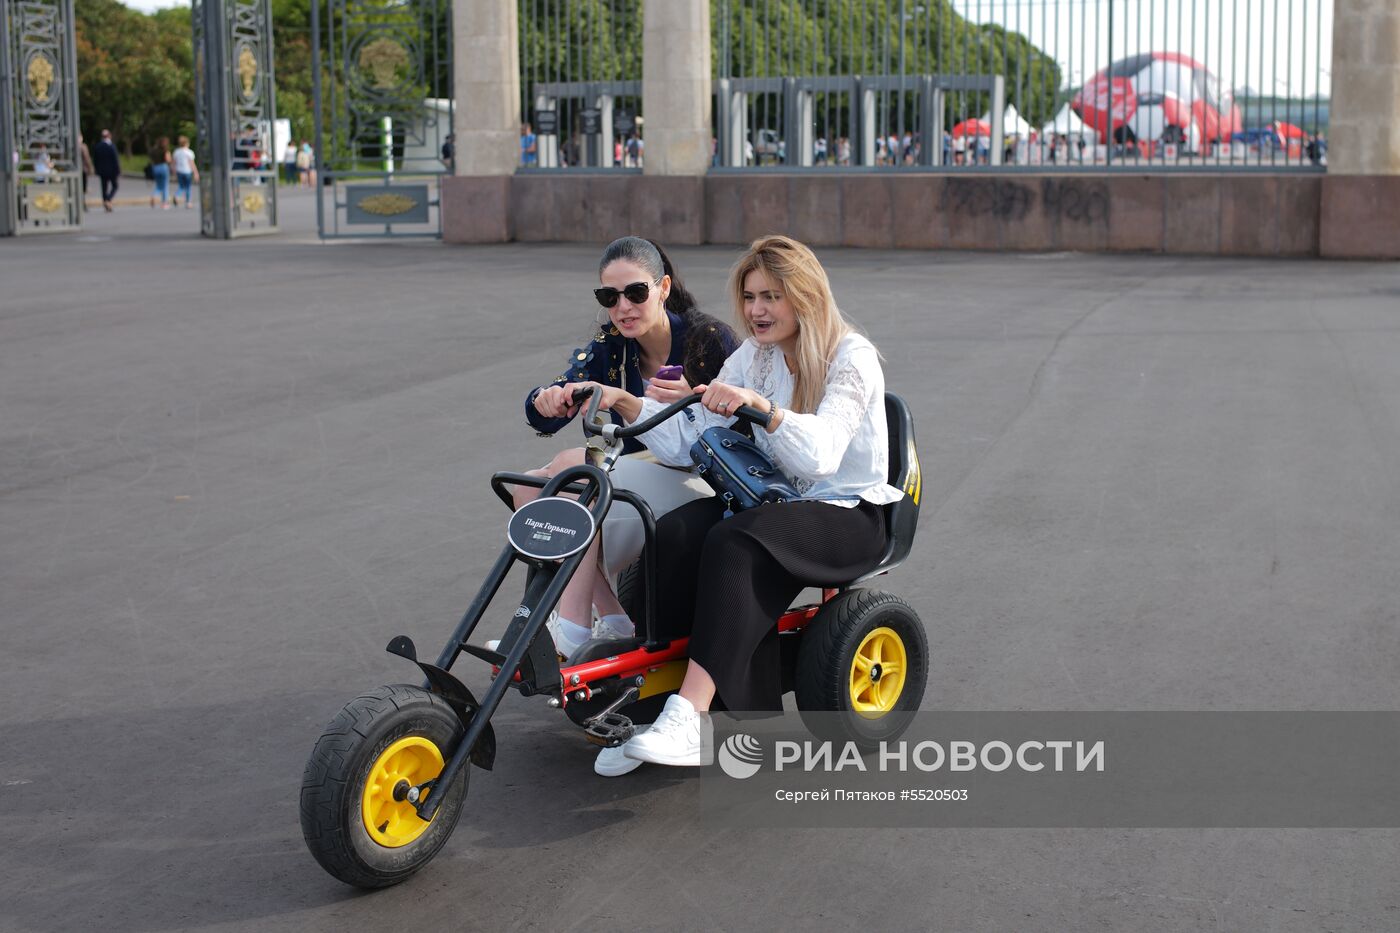 Отдыхающие в Парке искусств "Музеон" в Москве